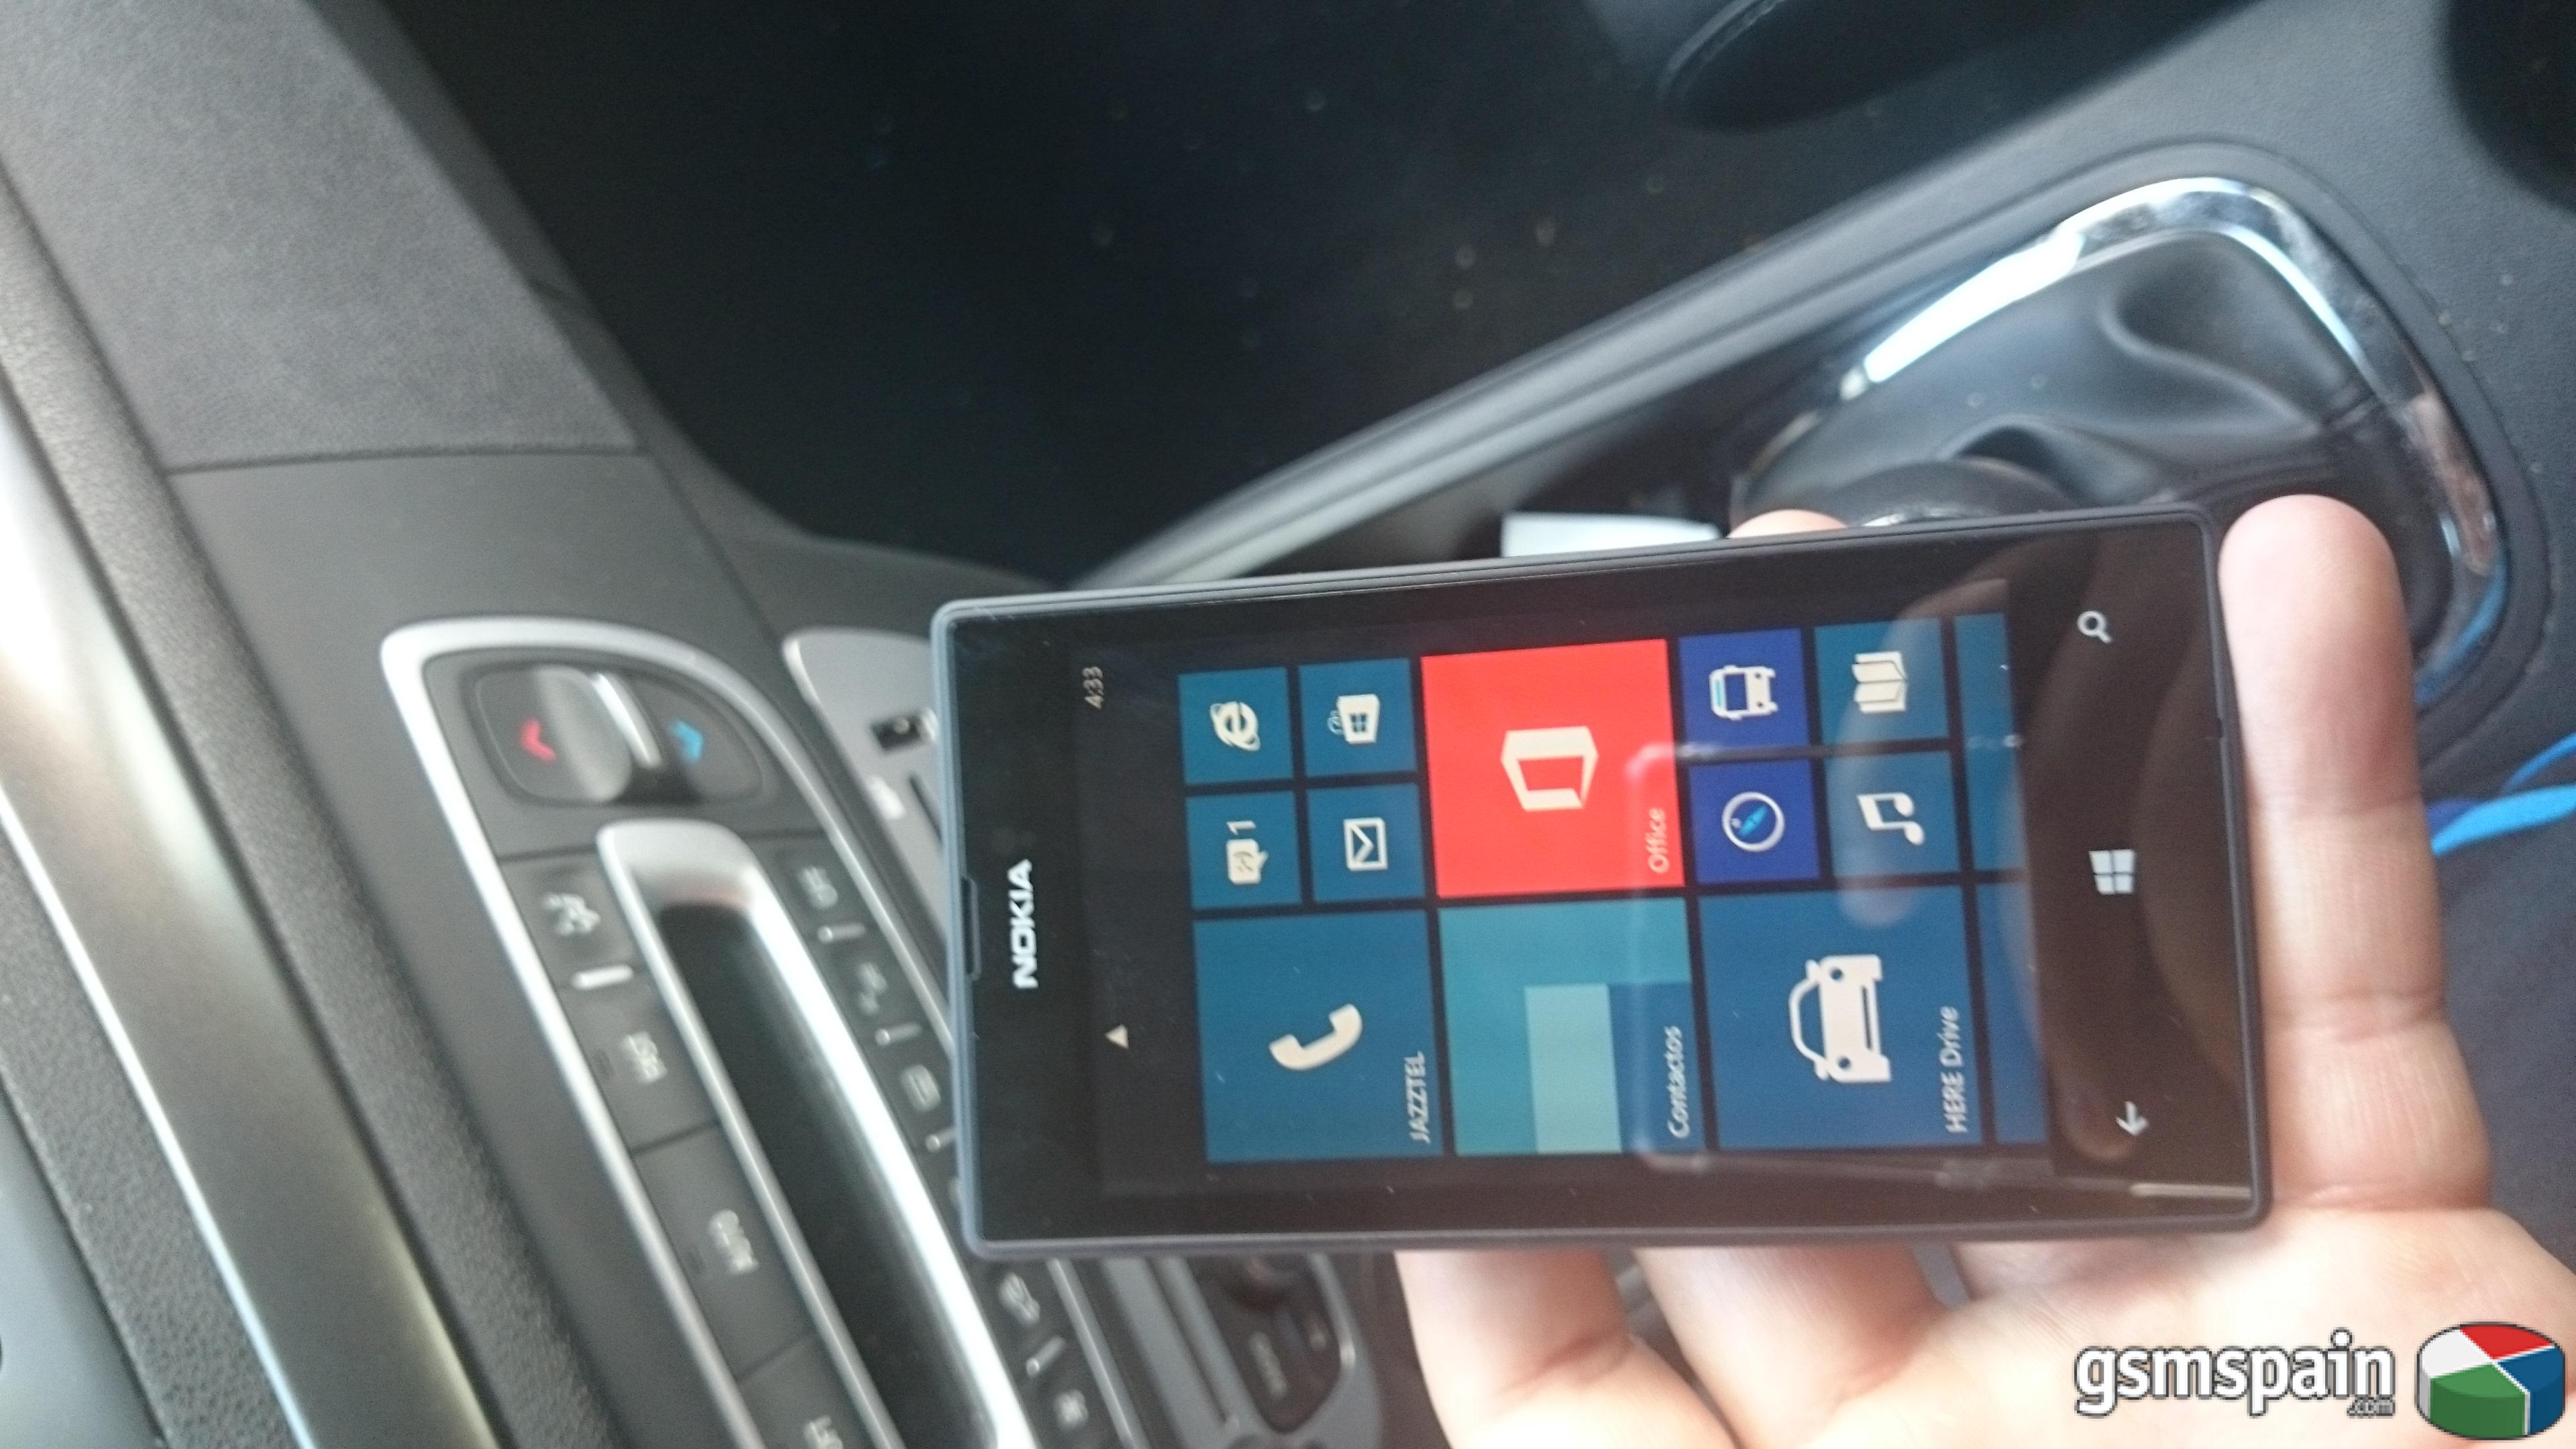 [VENDO] Nokia lumia 520 libre nuevo